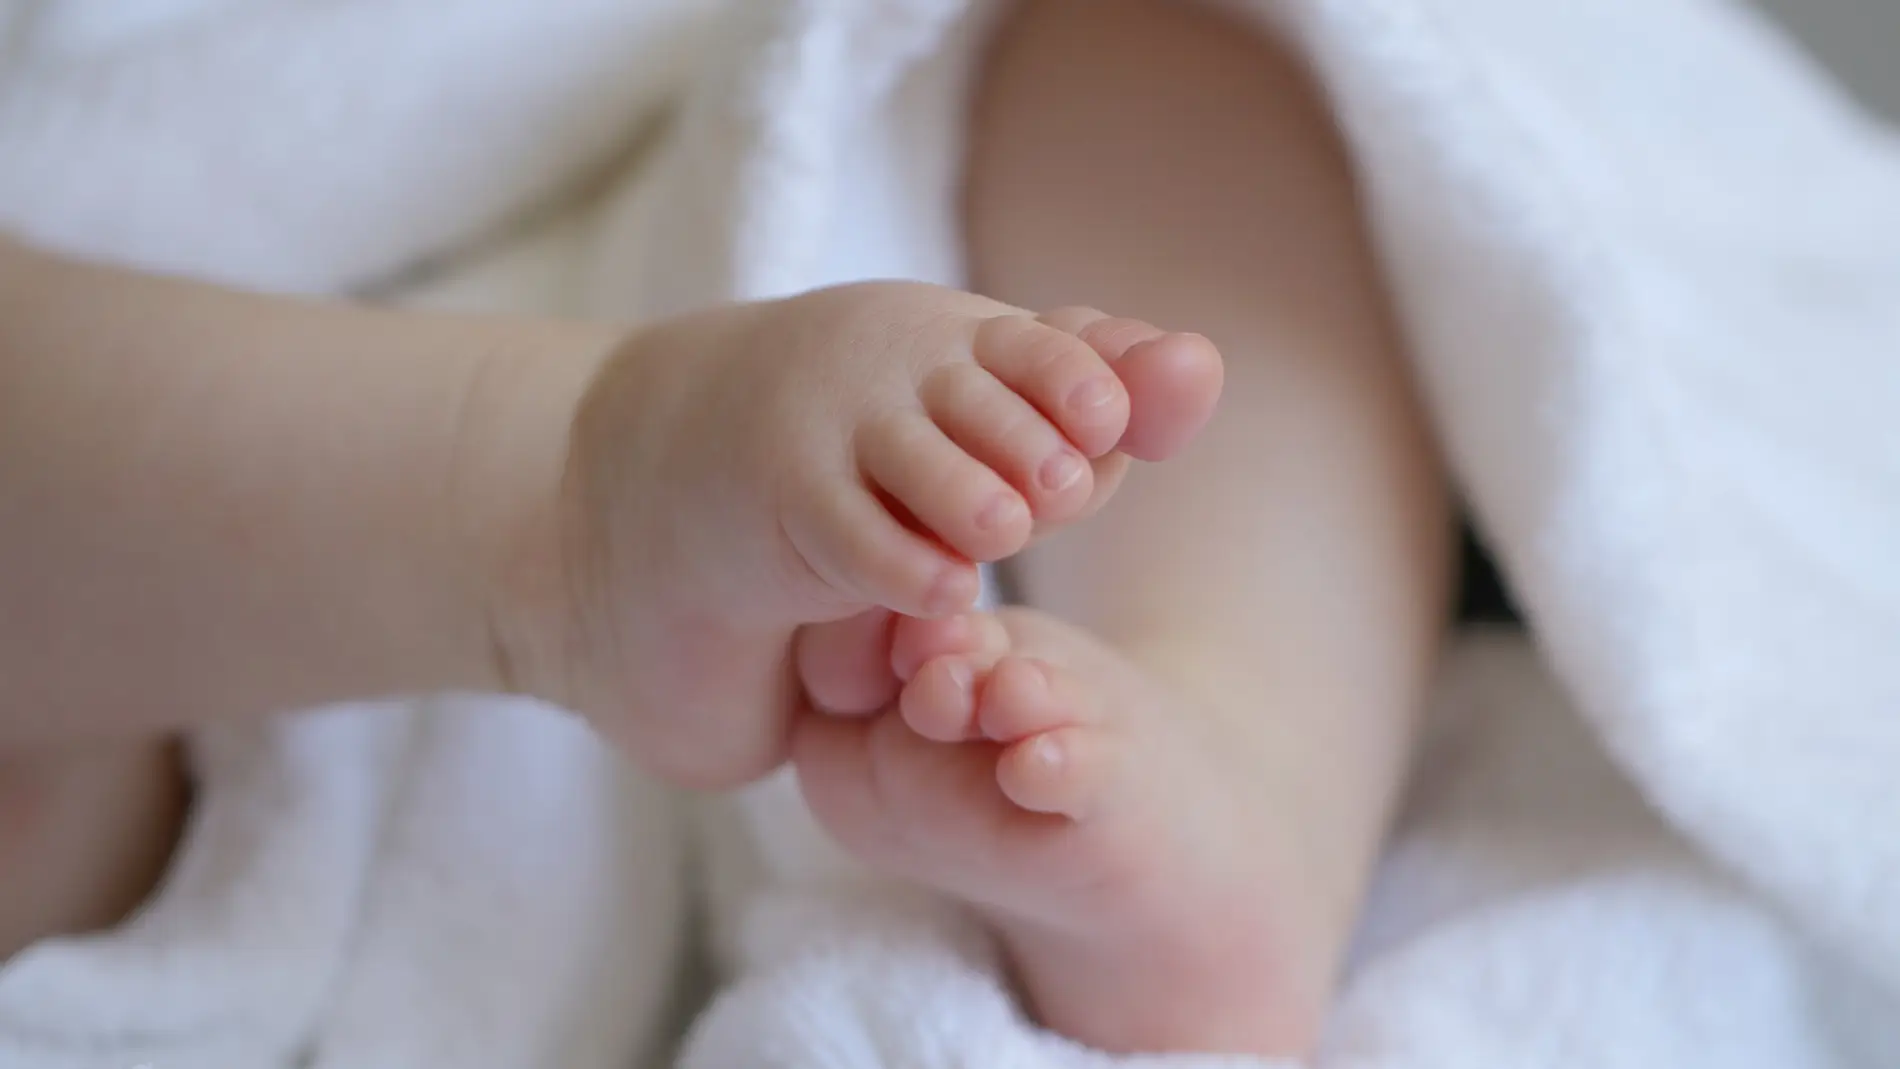 Pies de un bebé | Pixabay